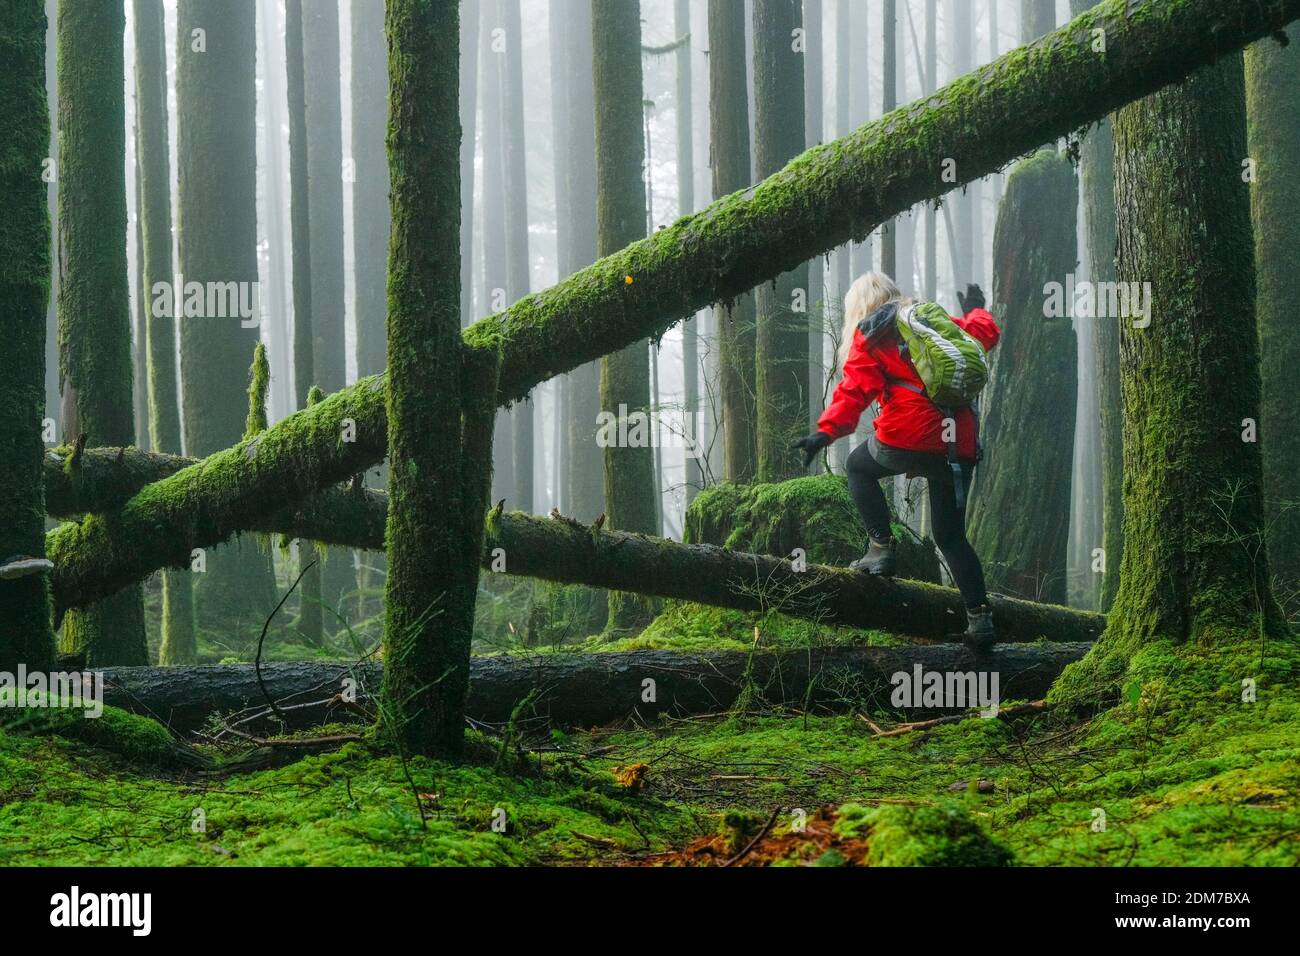 Frau beim Wandern durch nebligen Wald mit 2. Wachstum, Golden Ears Provincial Park, Maple Ridge, British Columbia, Kanada Stockfoto